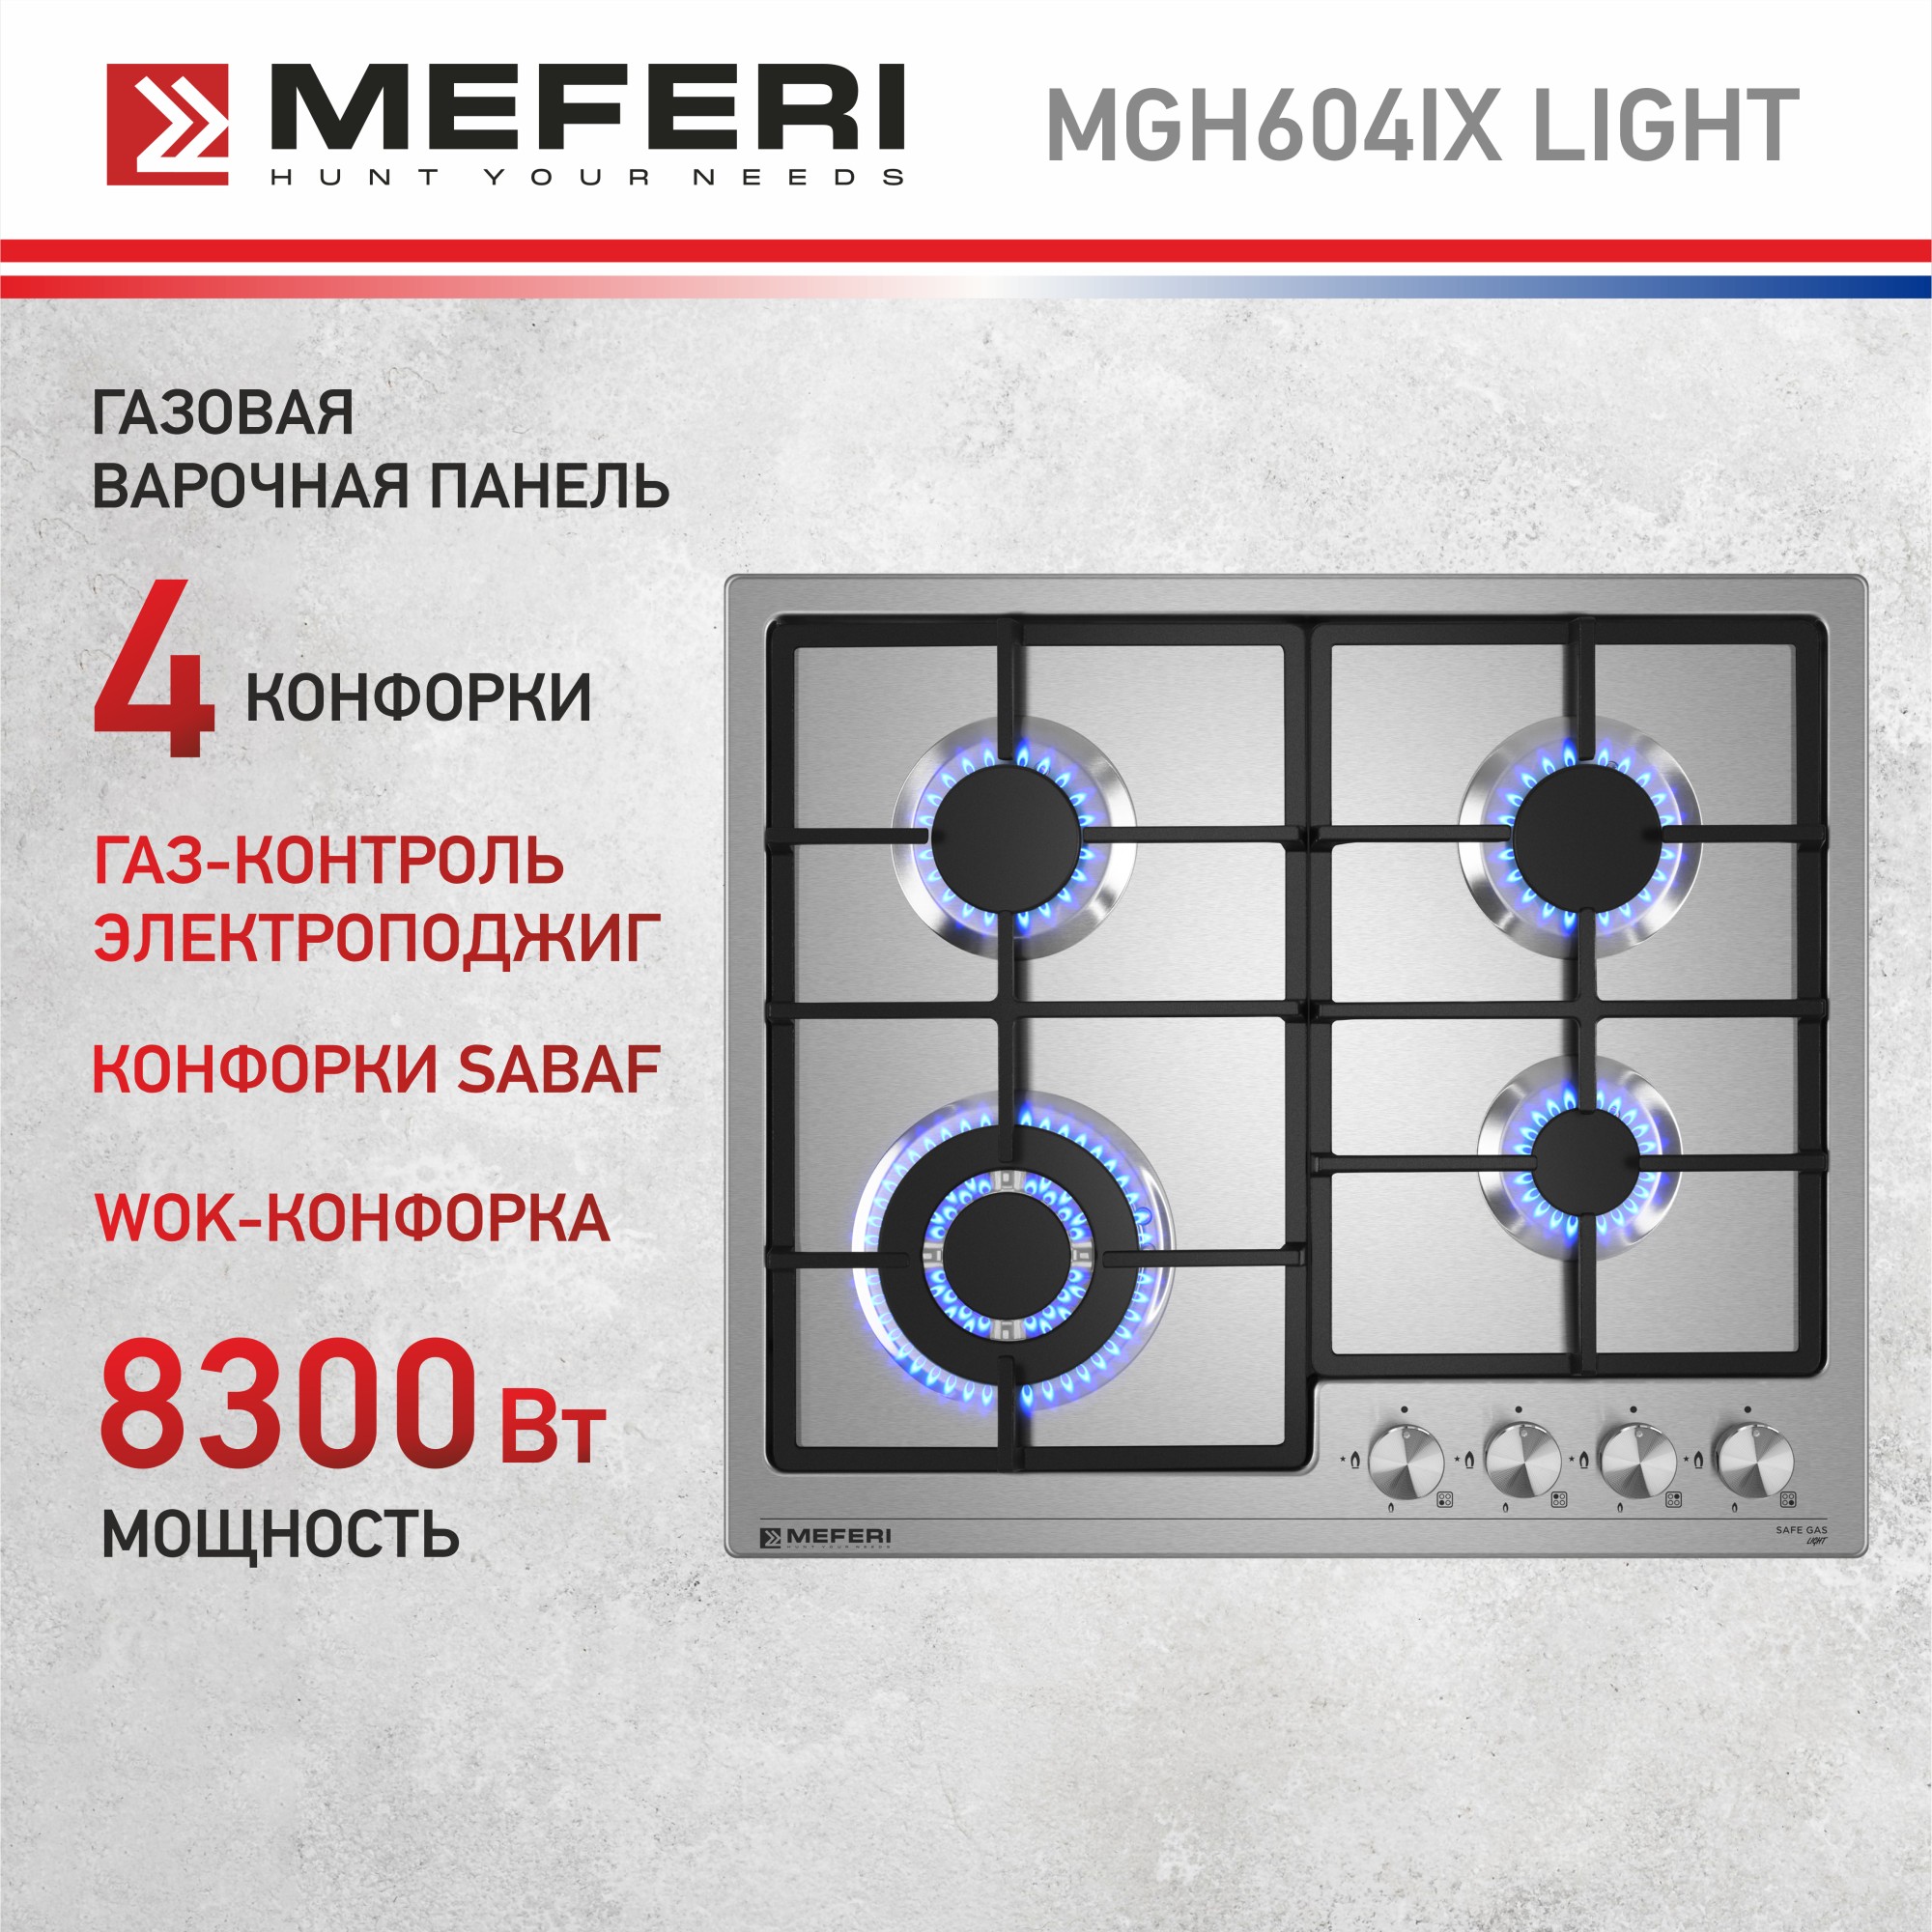 Встраиваемая варочная панель газовая Meferi MGH604IX LIGHT серебристый встраиваемая варочная панель газовая meferi mgh604ix light серебристый